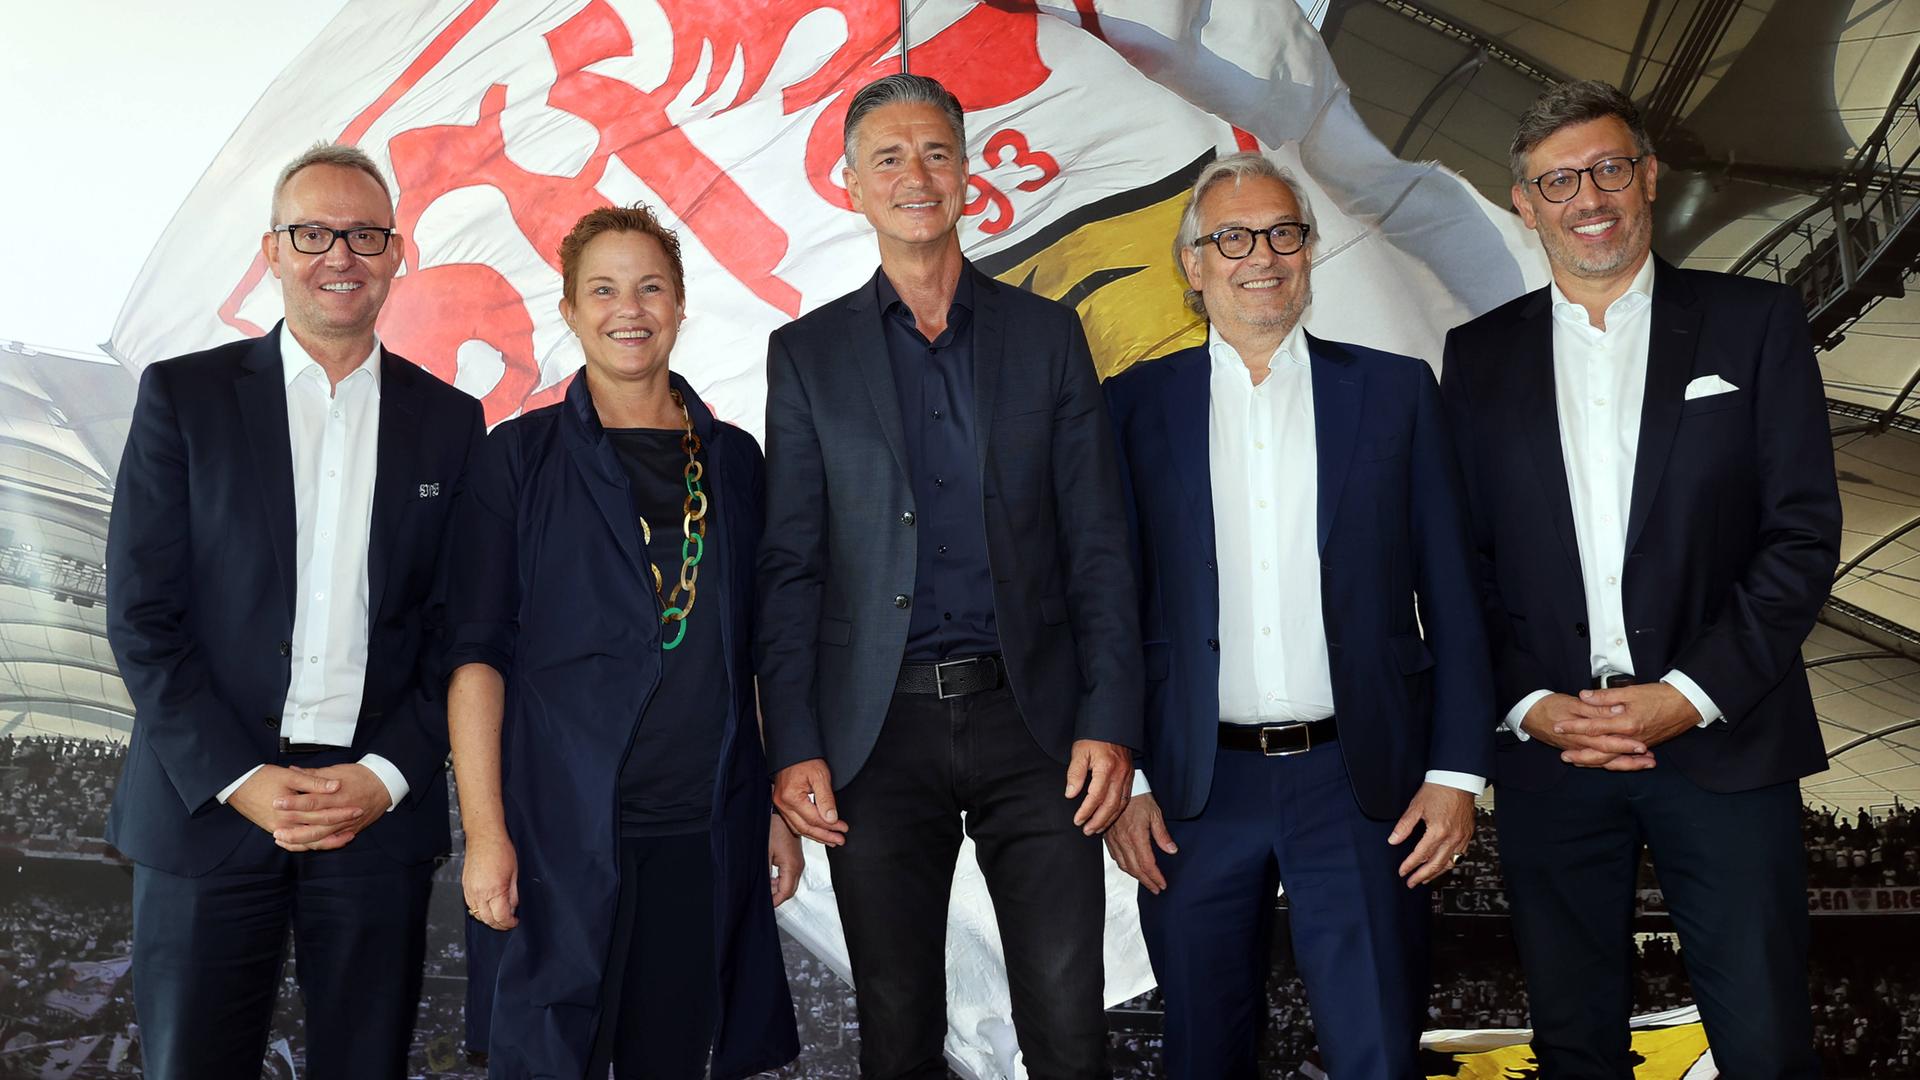 Fünf Vertreter des VfB Stuttgart und der Konzerne Porsche und Mercedes-Benz stehen auf einer gemeinsamen Pressekonferenz vor einer Wand mit dem Vereinslogo der Stuttgarter.